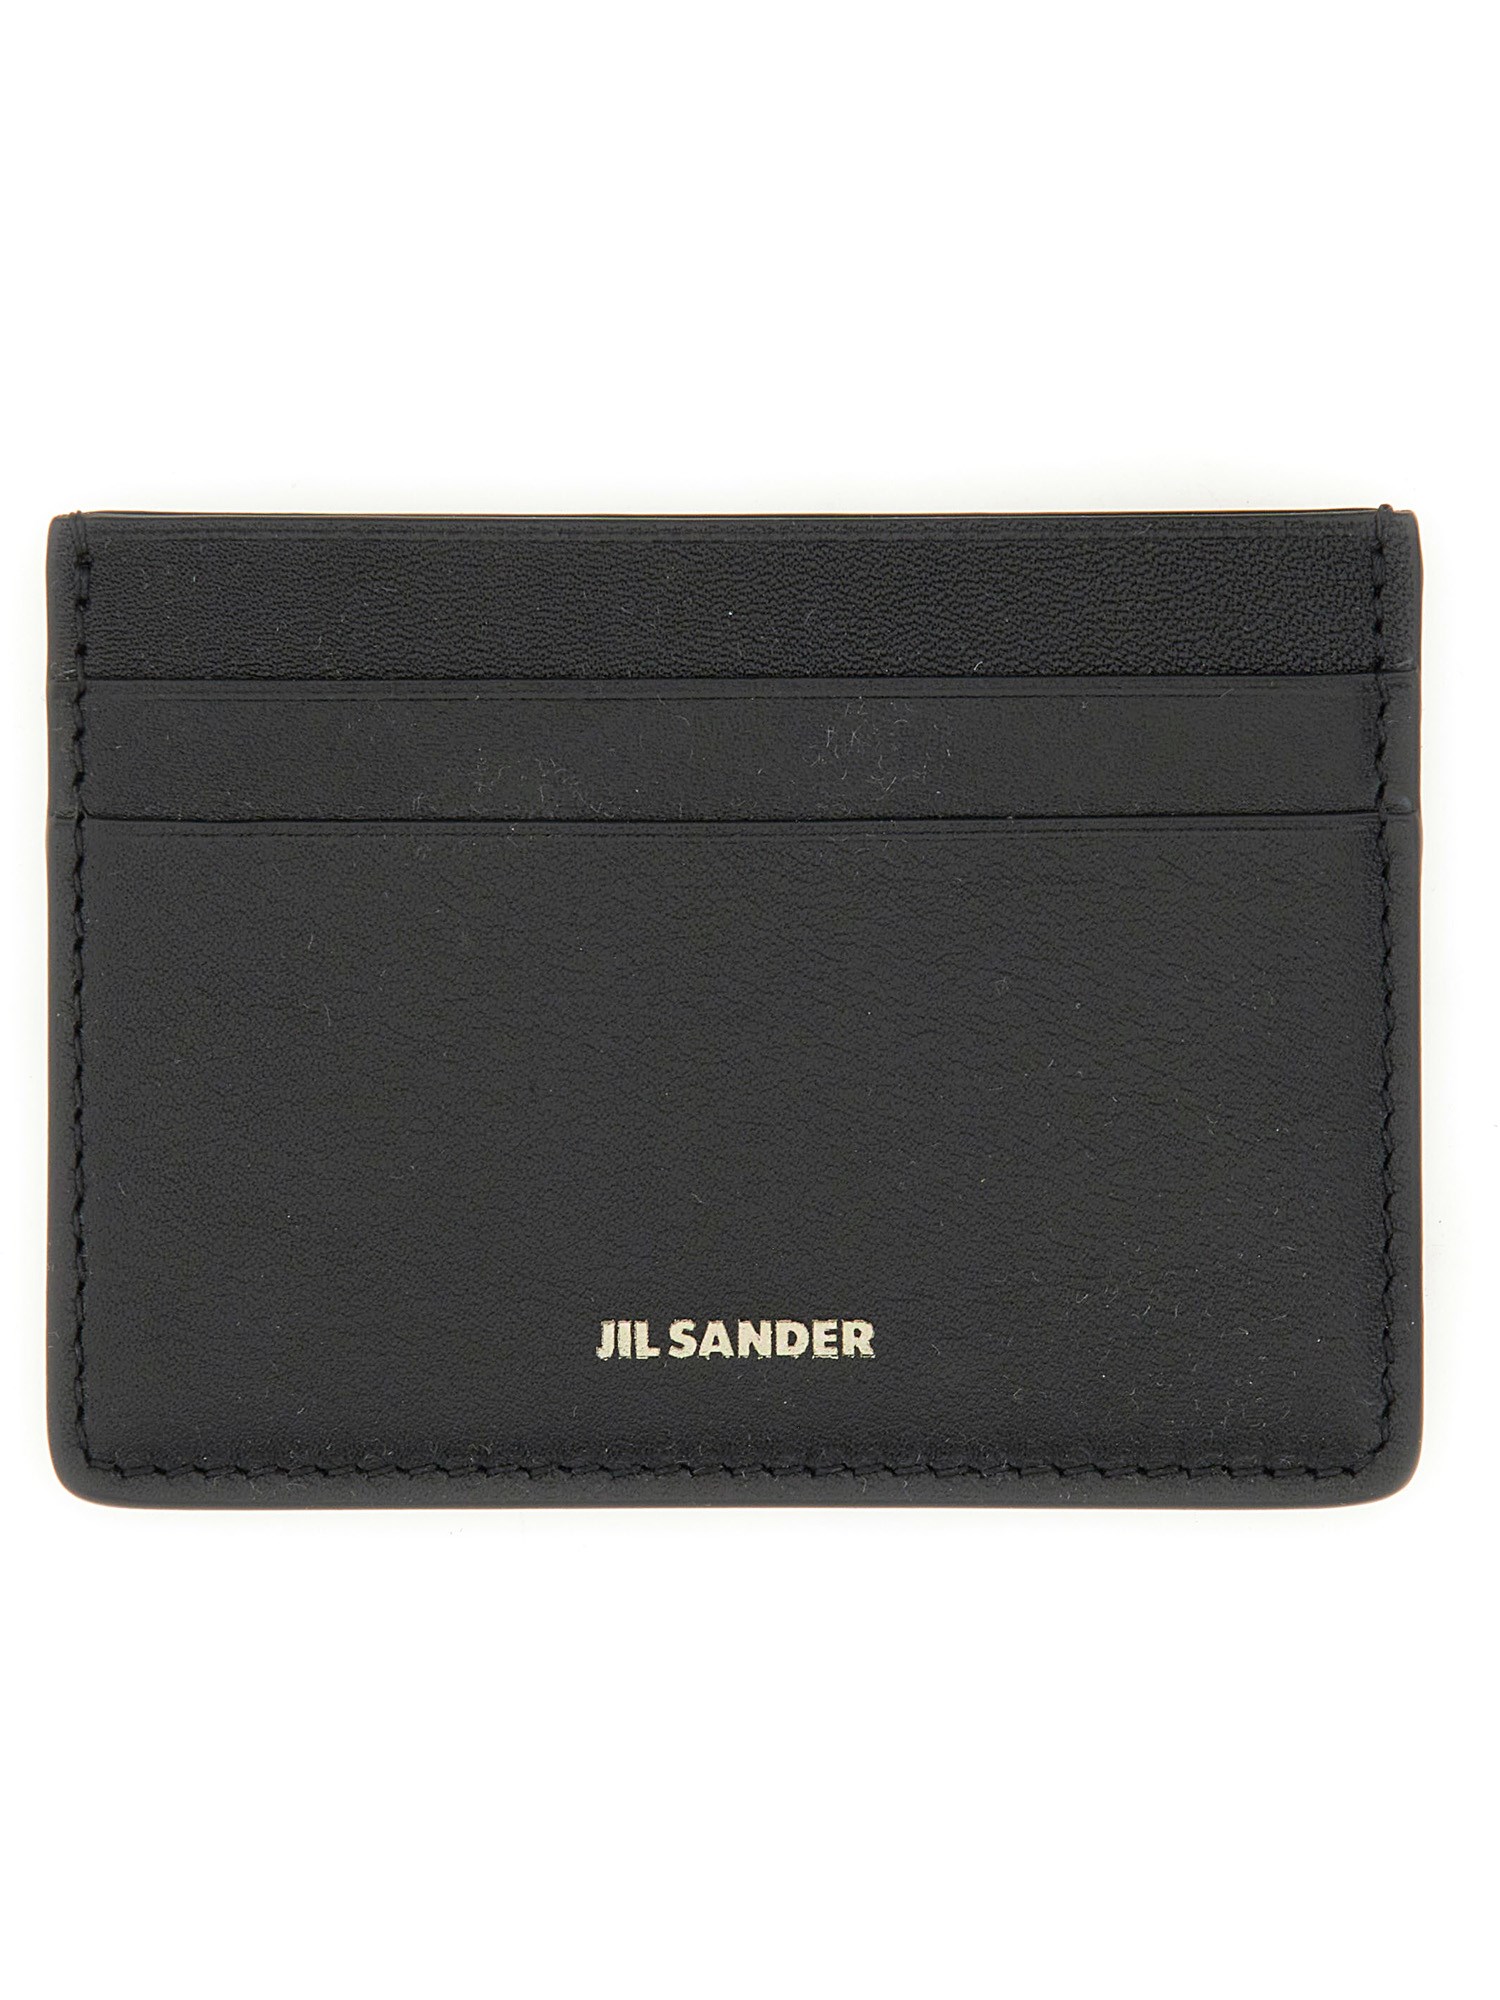 Jil Sander Card Holder With Logo In Black